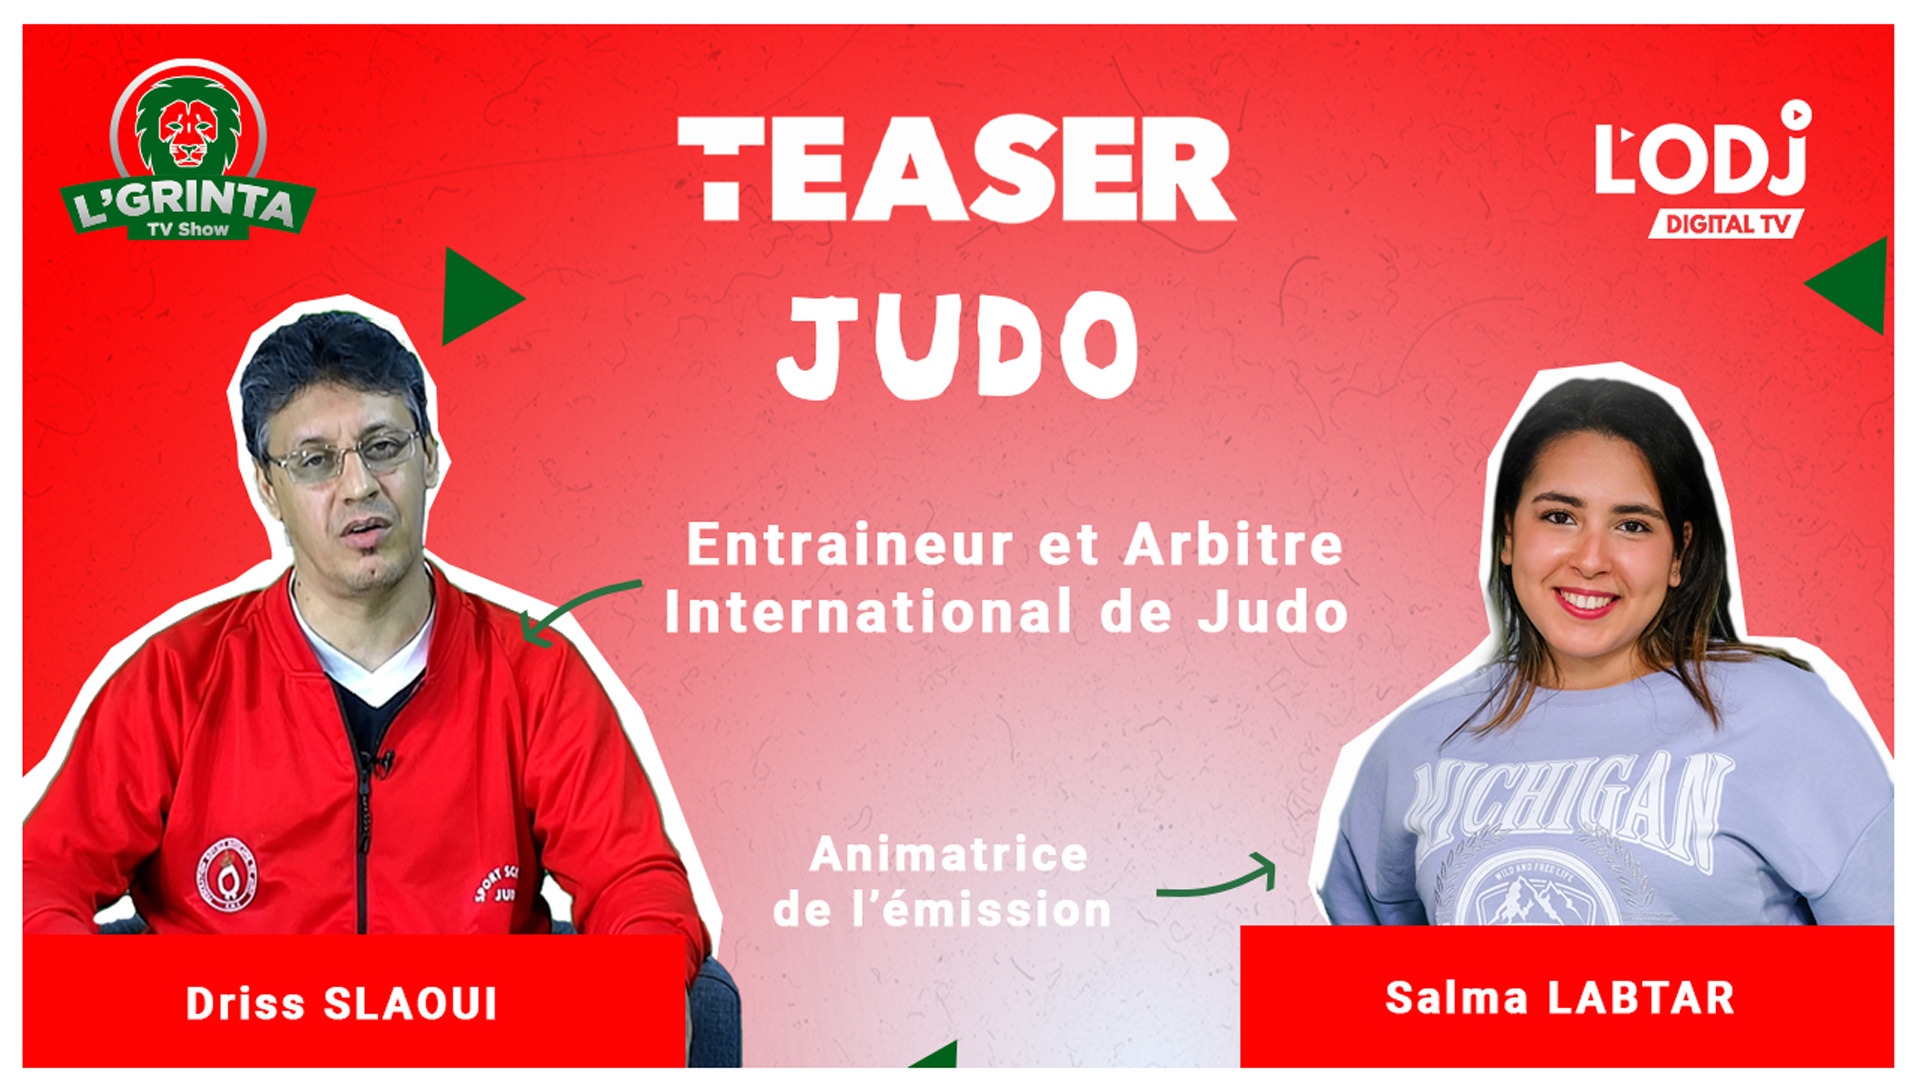 Teaser : LGRINTA reçoit Driss Saloui, champion du judo et entraineur et arbitre international !